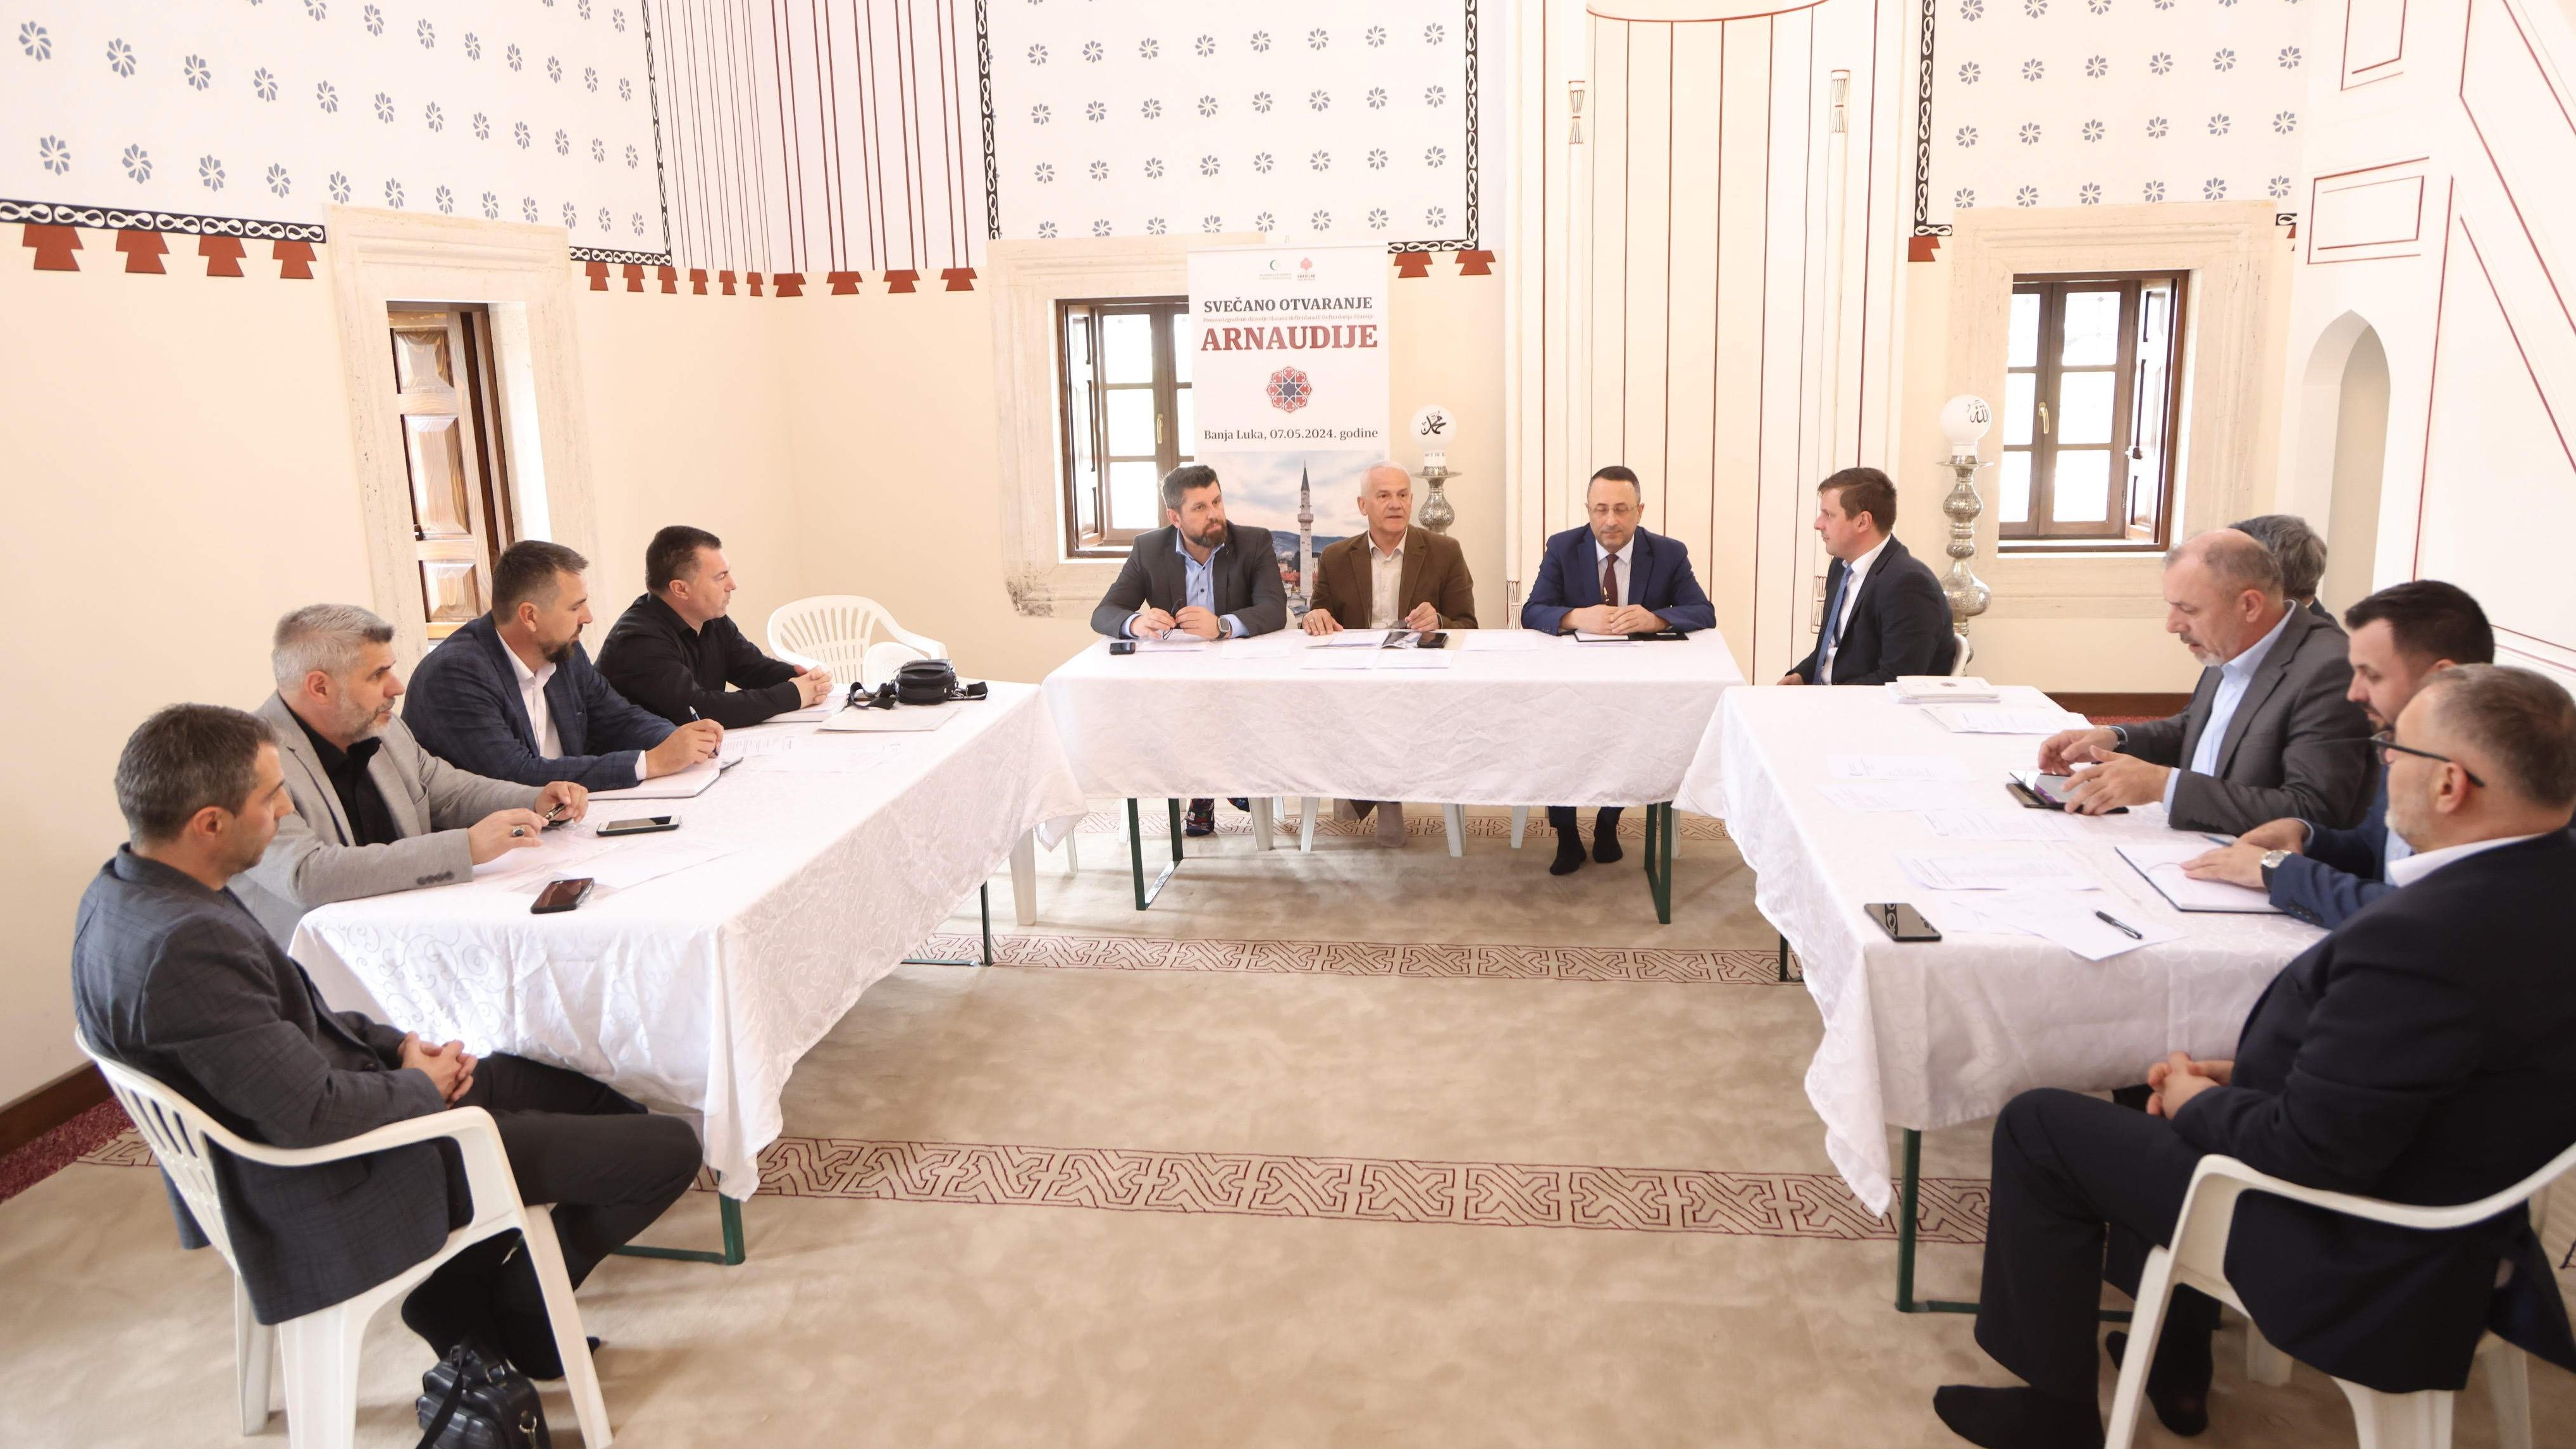 Sjednica Organizacionog odbora: Brojne visoke zvanice na otvorenju banjalučke Arnaudija džamije